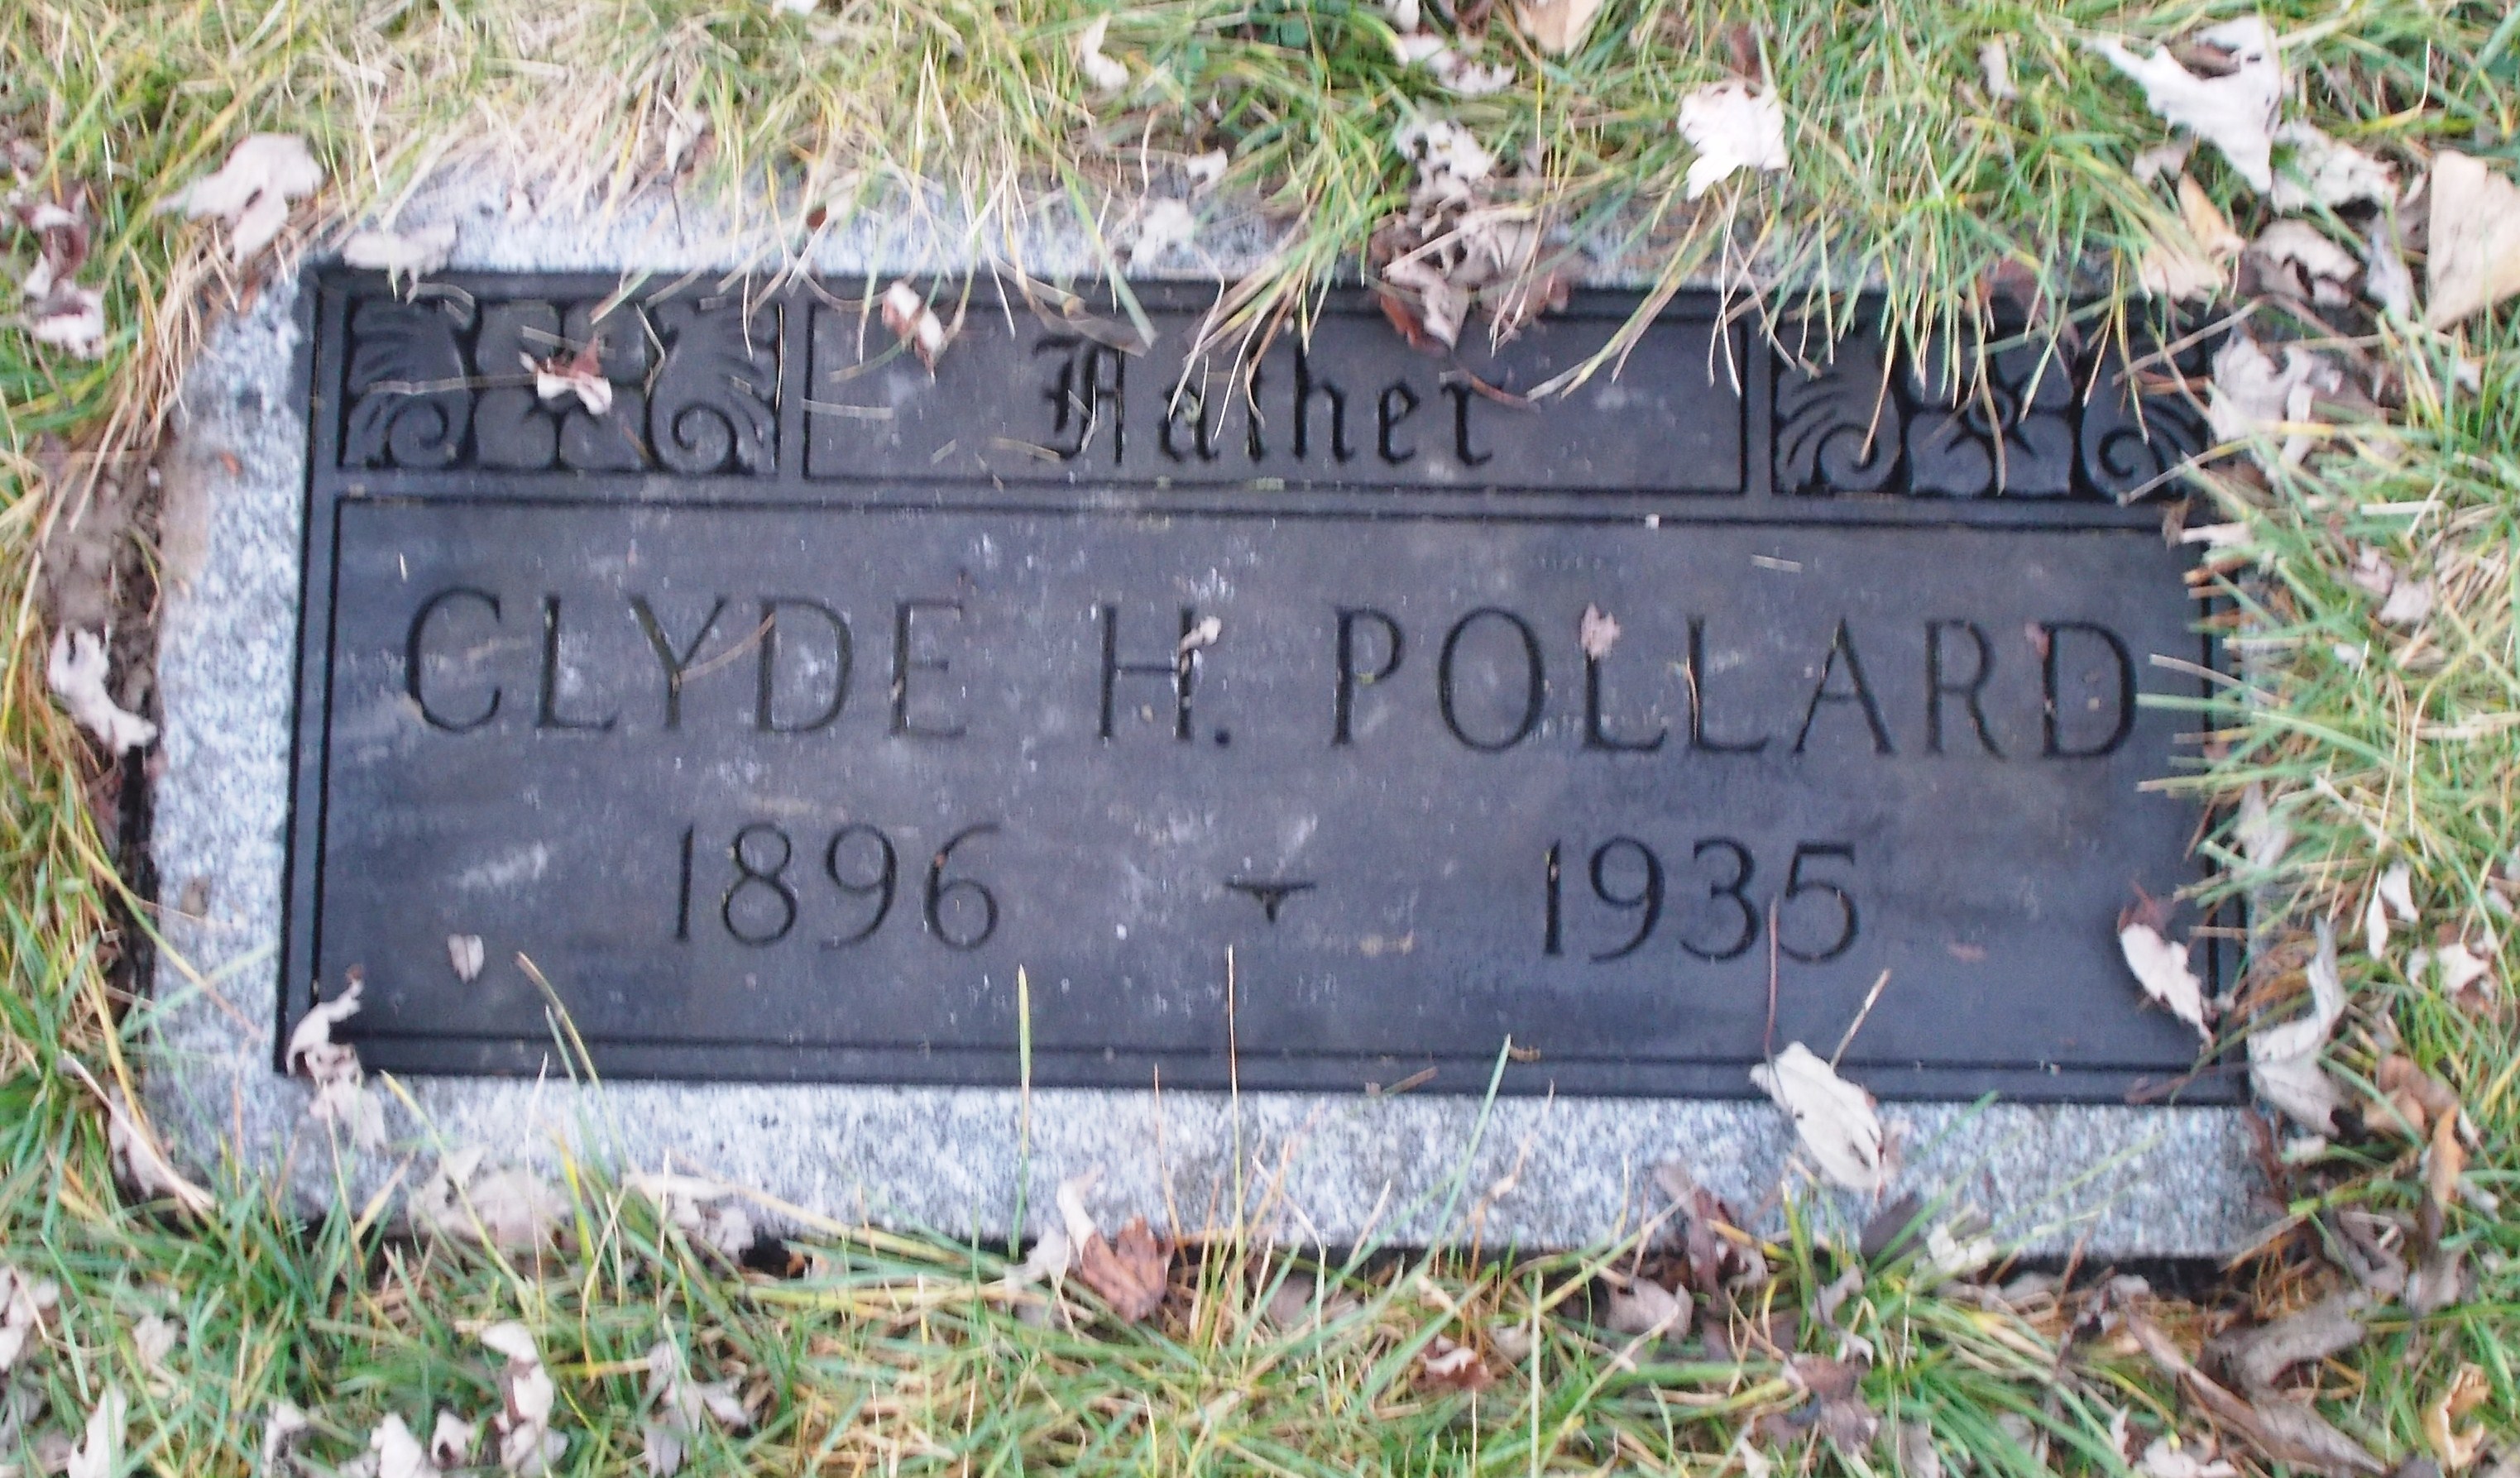 Clyde H Pollard